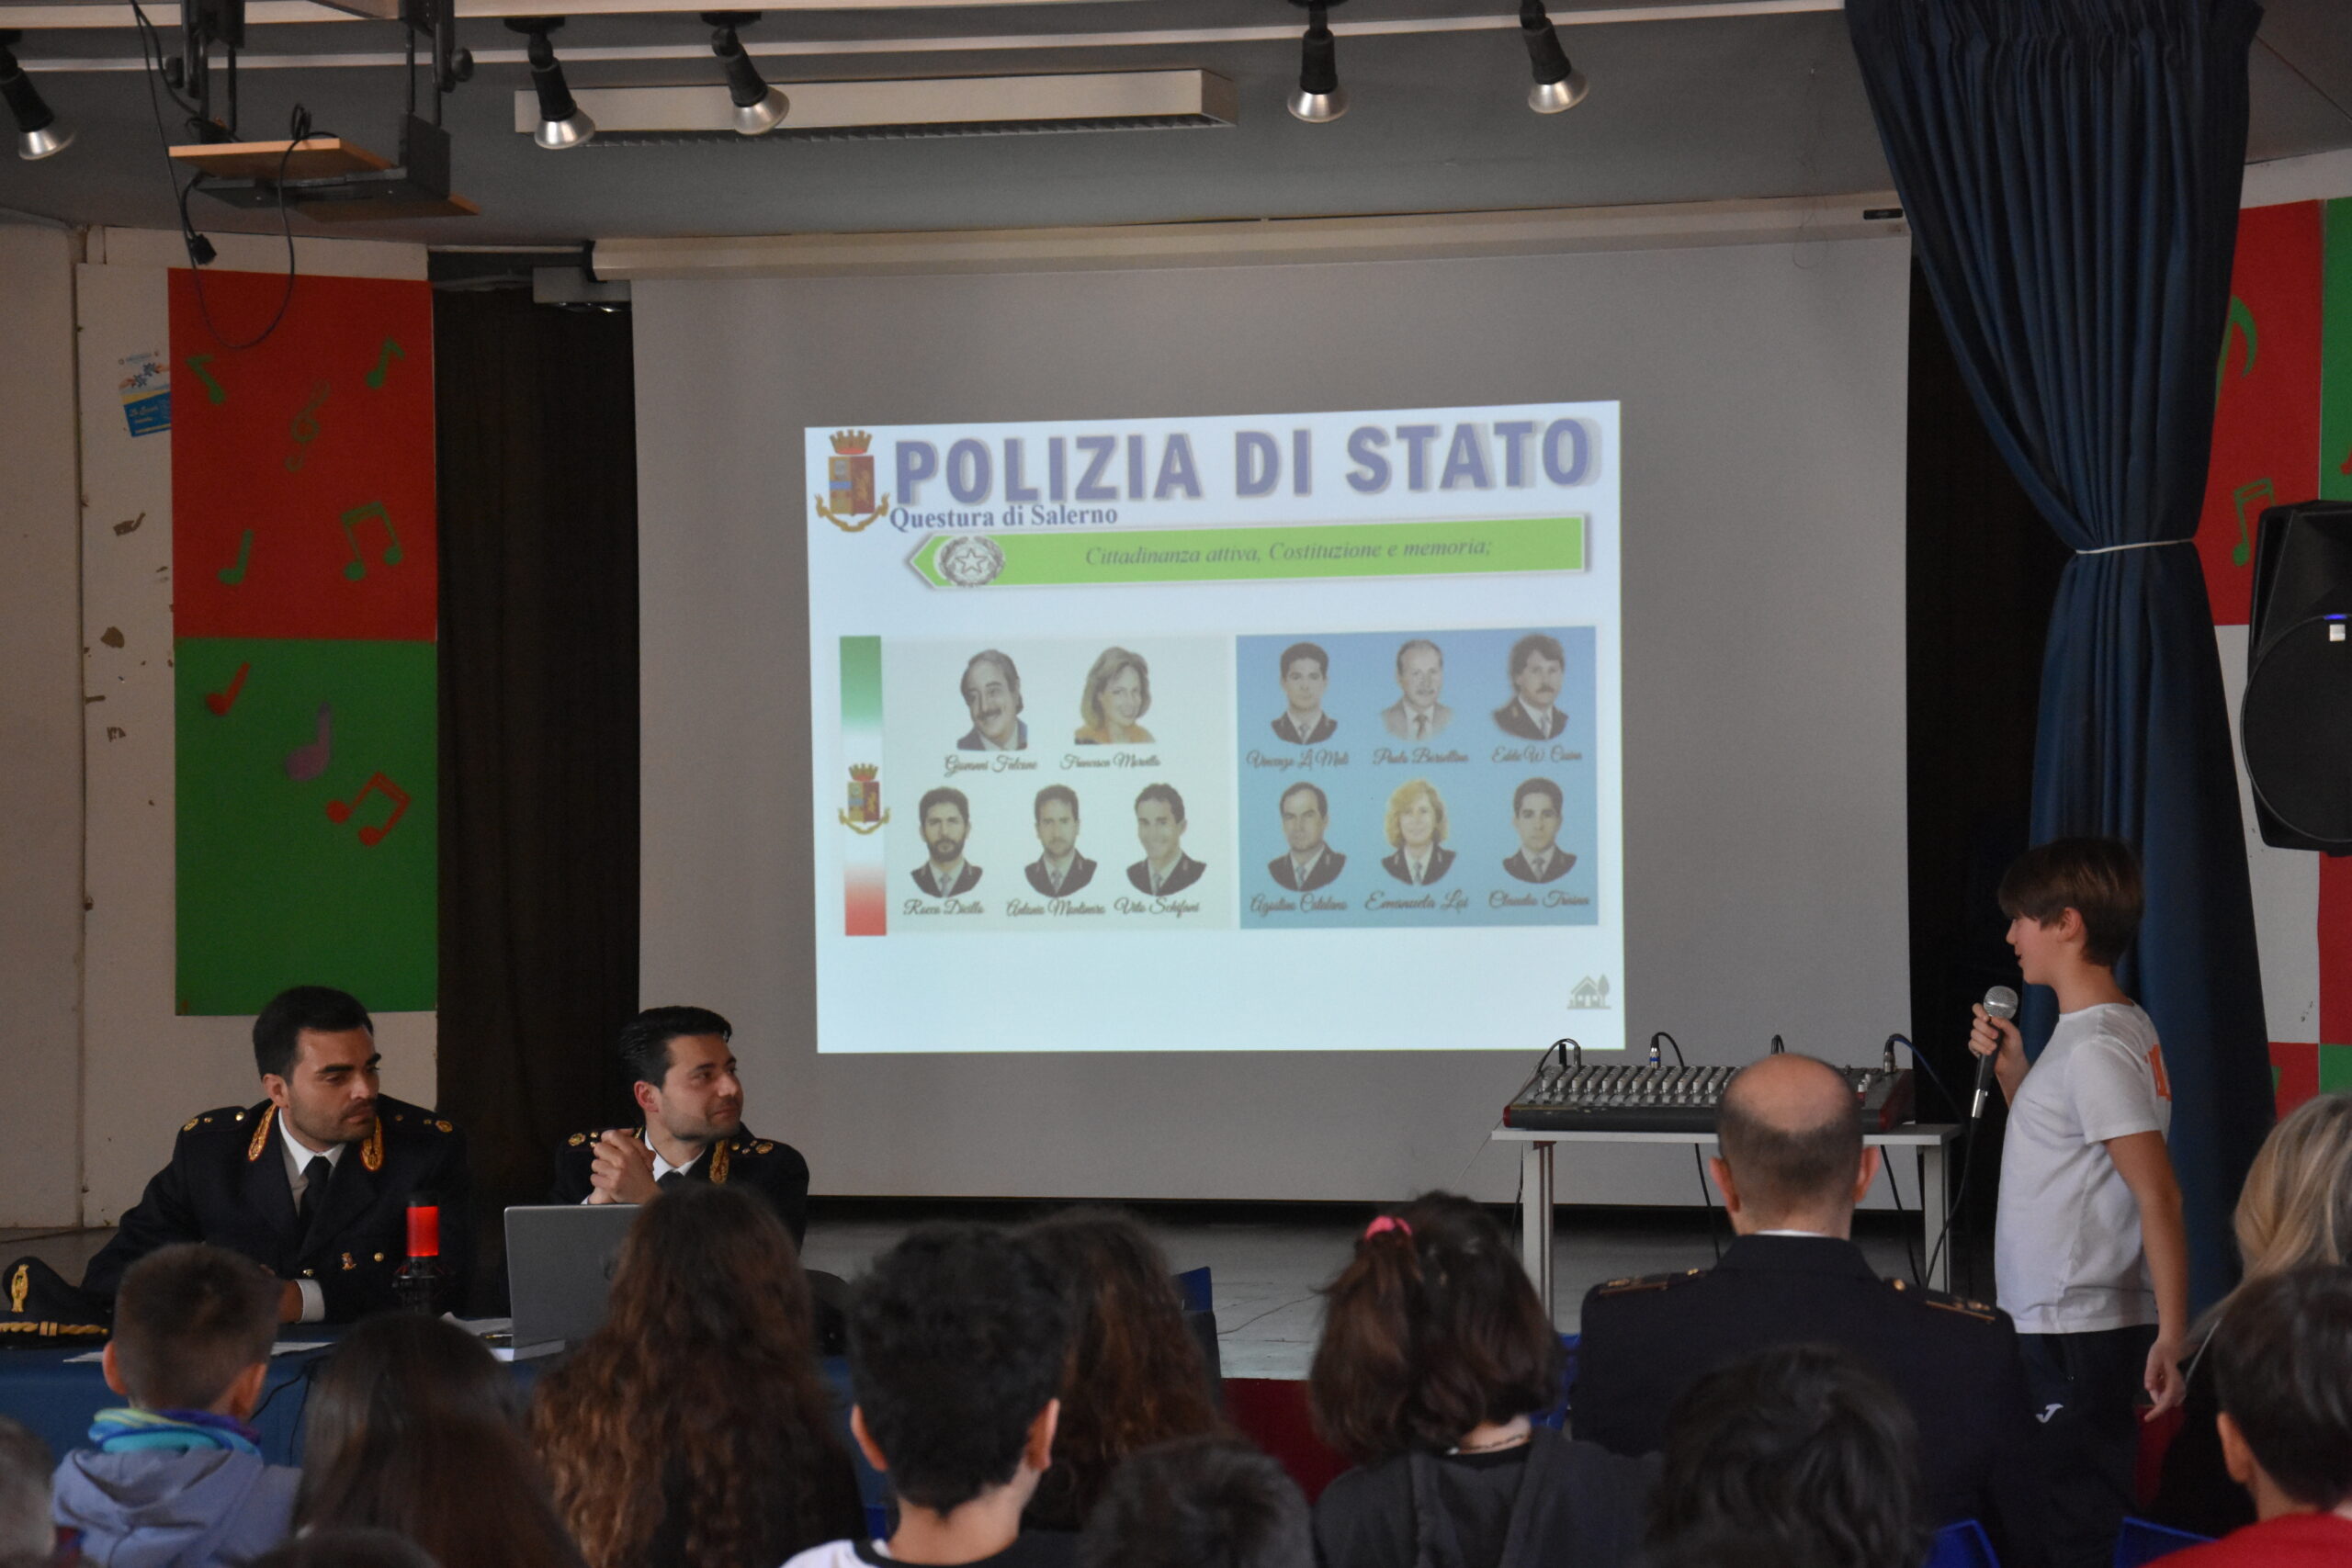 Salerno: Polizia di Stato, concluso progetto “Pretendiamo legalità”